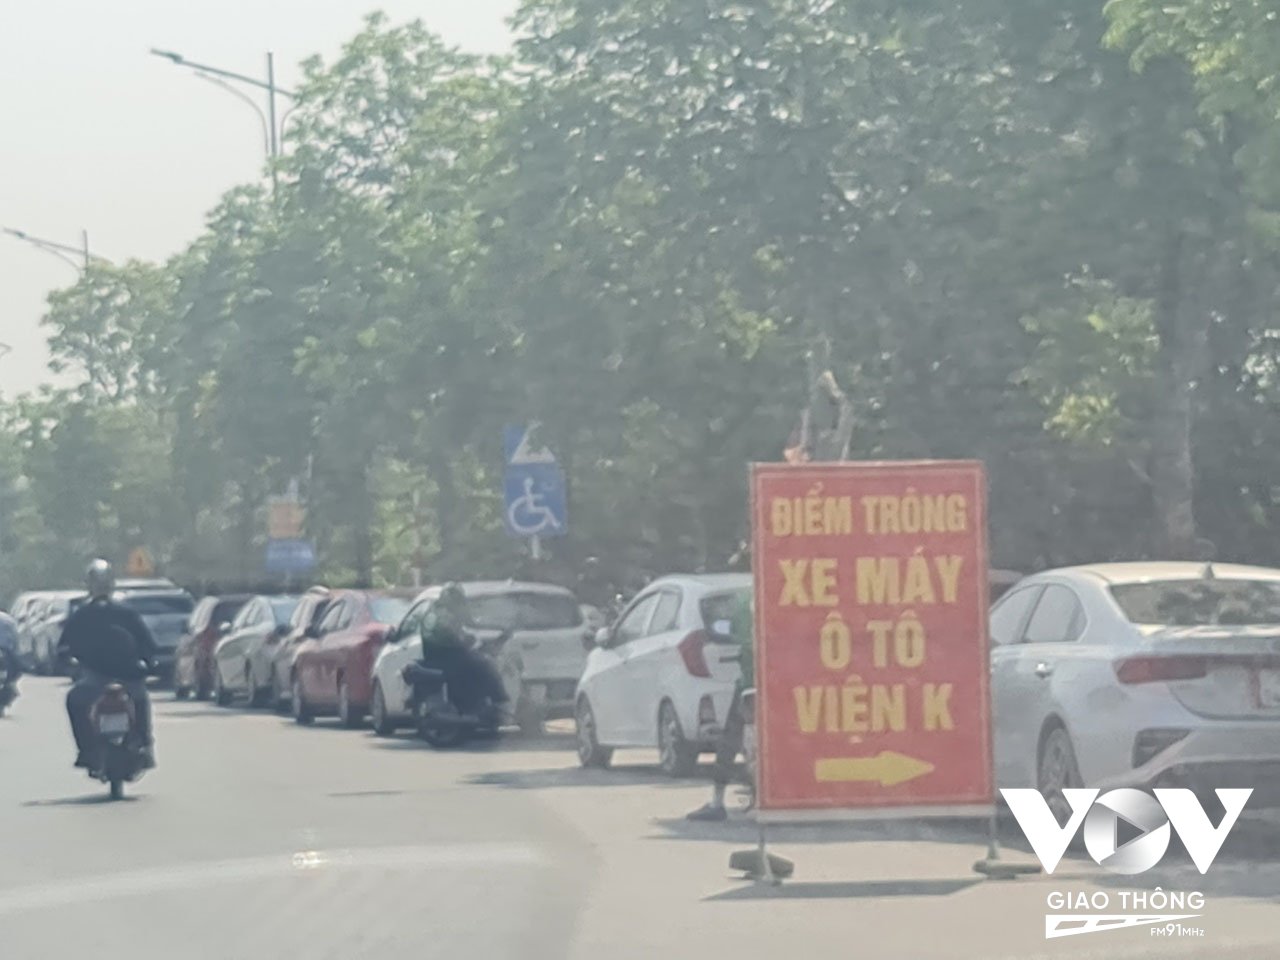 Một yếu tố khác cũng đang khiến đại lộ Chu Văn An thêm hỗn loạn, đó là không ít bãi trông xe ô tô xung quanh cổng viện K Tân Triều chiếm dụng làn xe máy tới hơn 1km